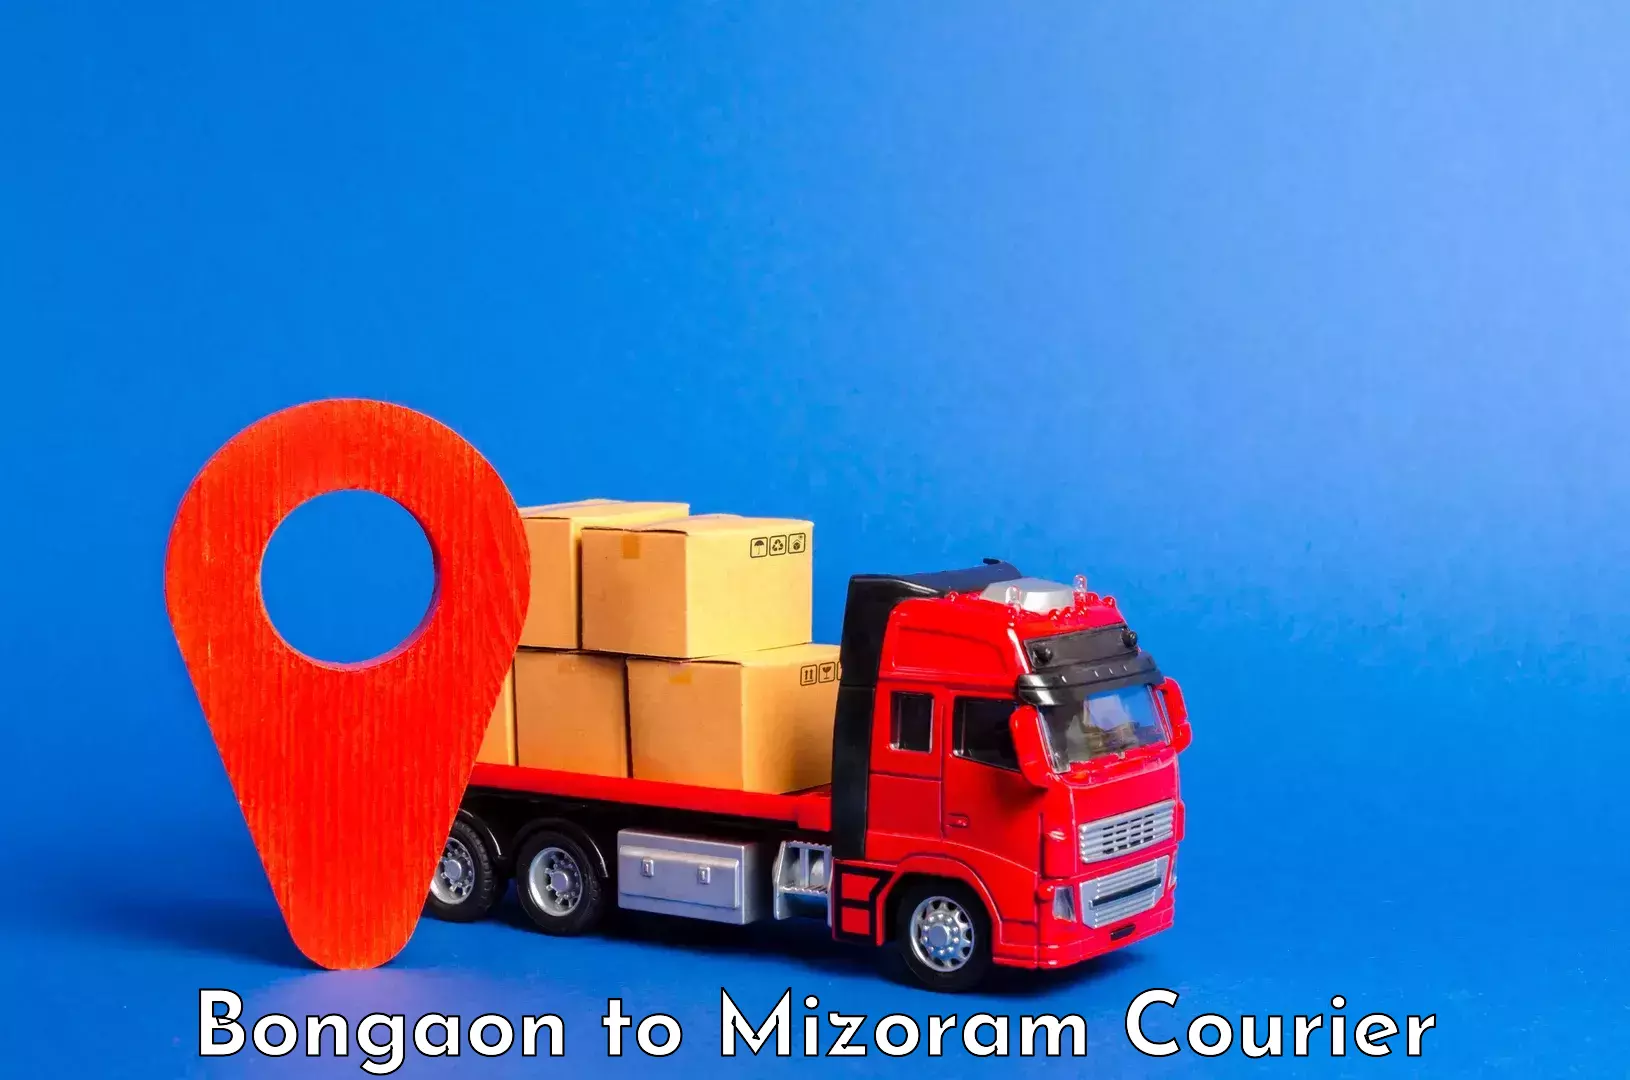 Luggage shipping specialists Bongaon to Mizoram